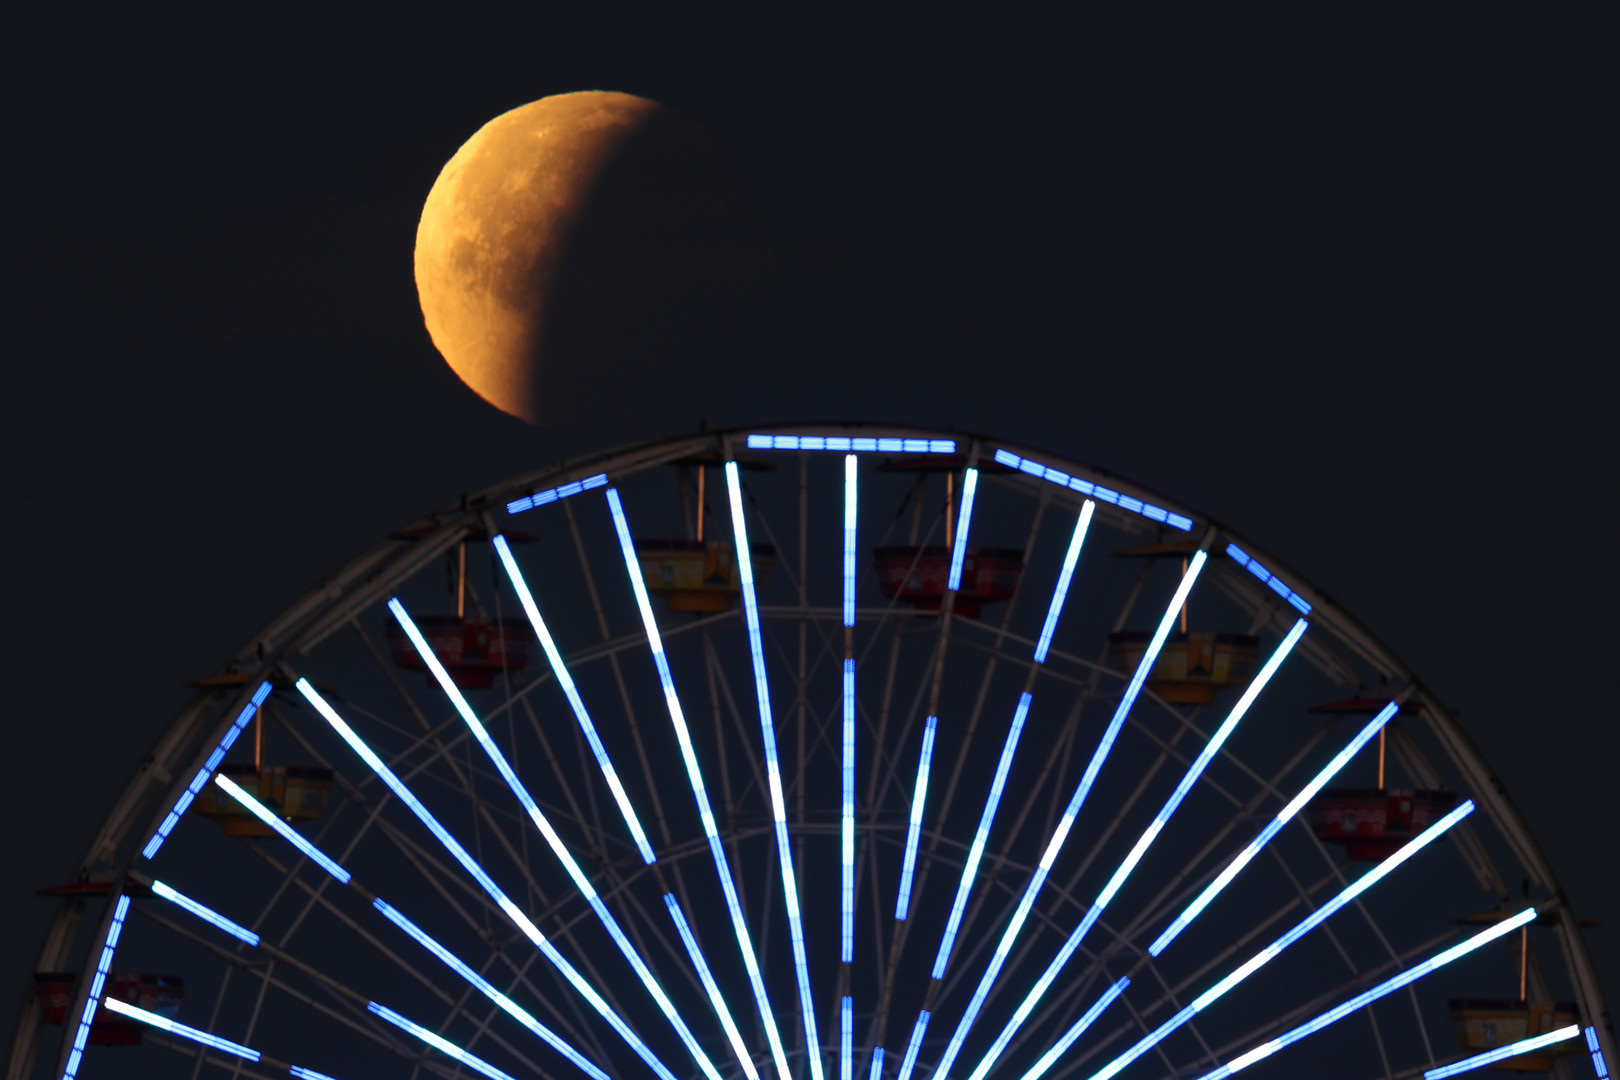 Pour la première fois depuis 150 ans, voici la «super Lune bleue de sang» (IMAGES)